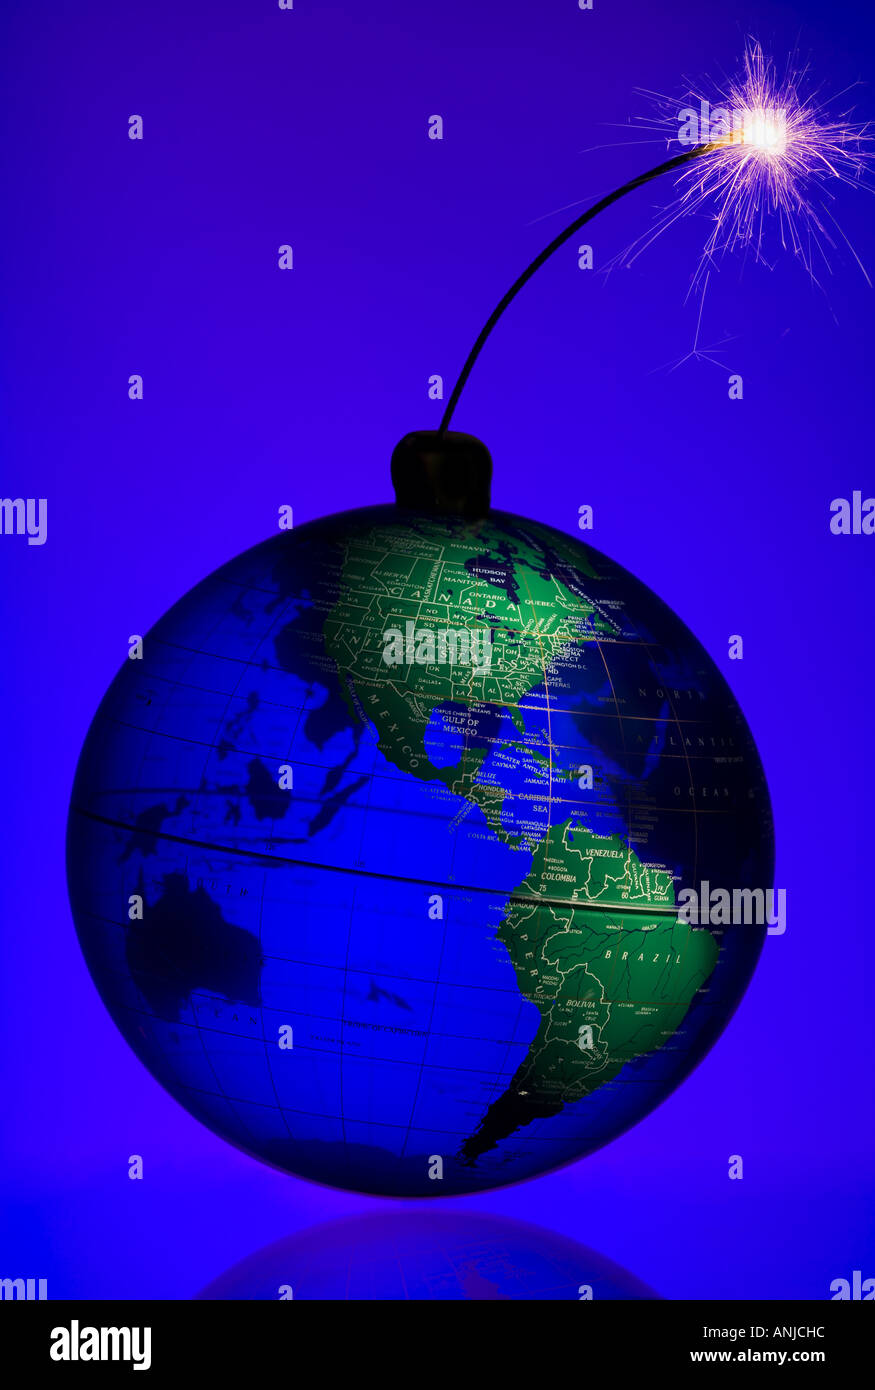 Globe with burning fuse Stock Photo